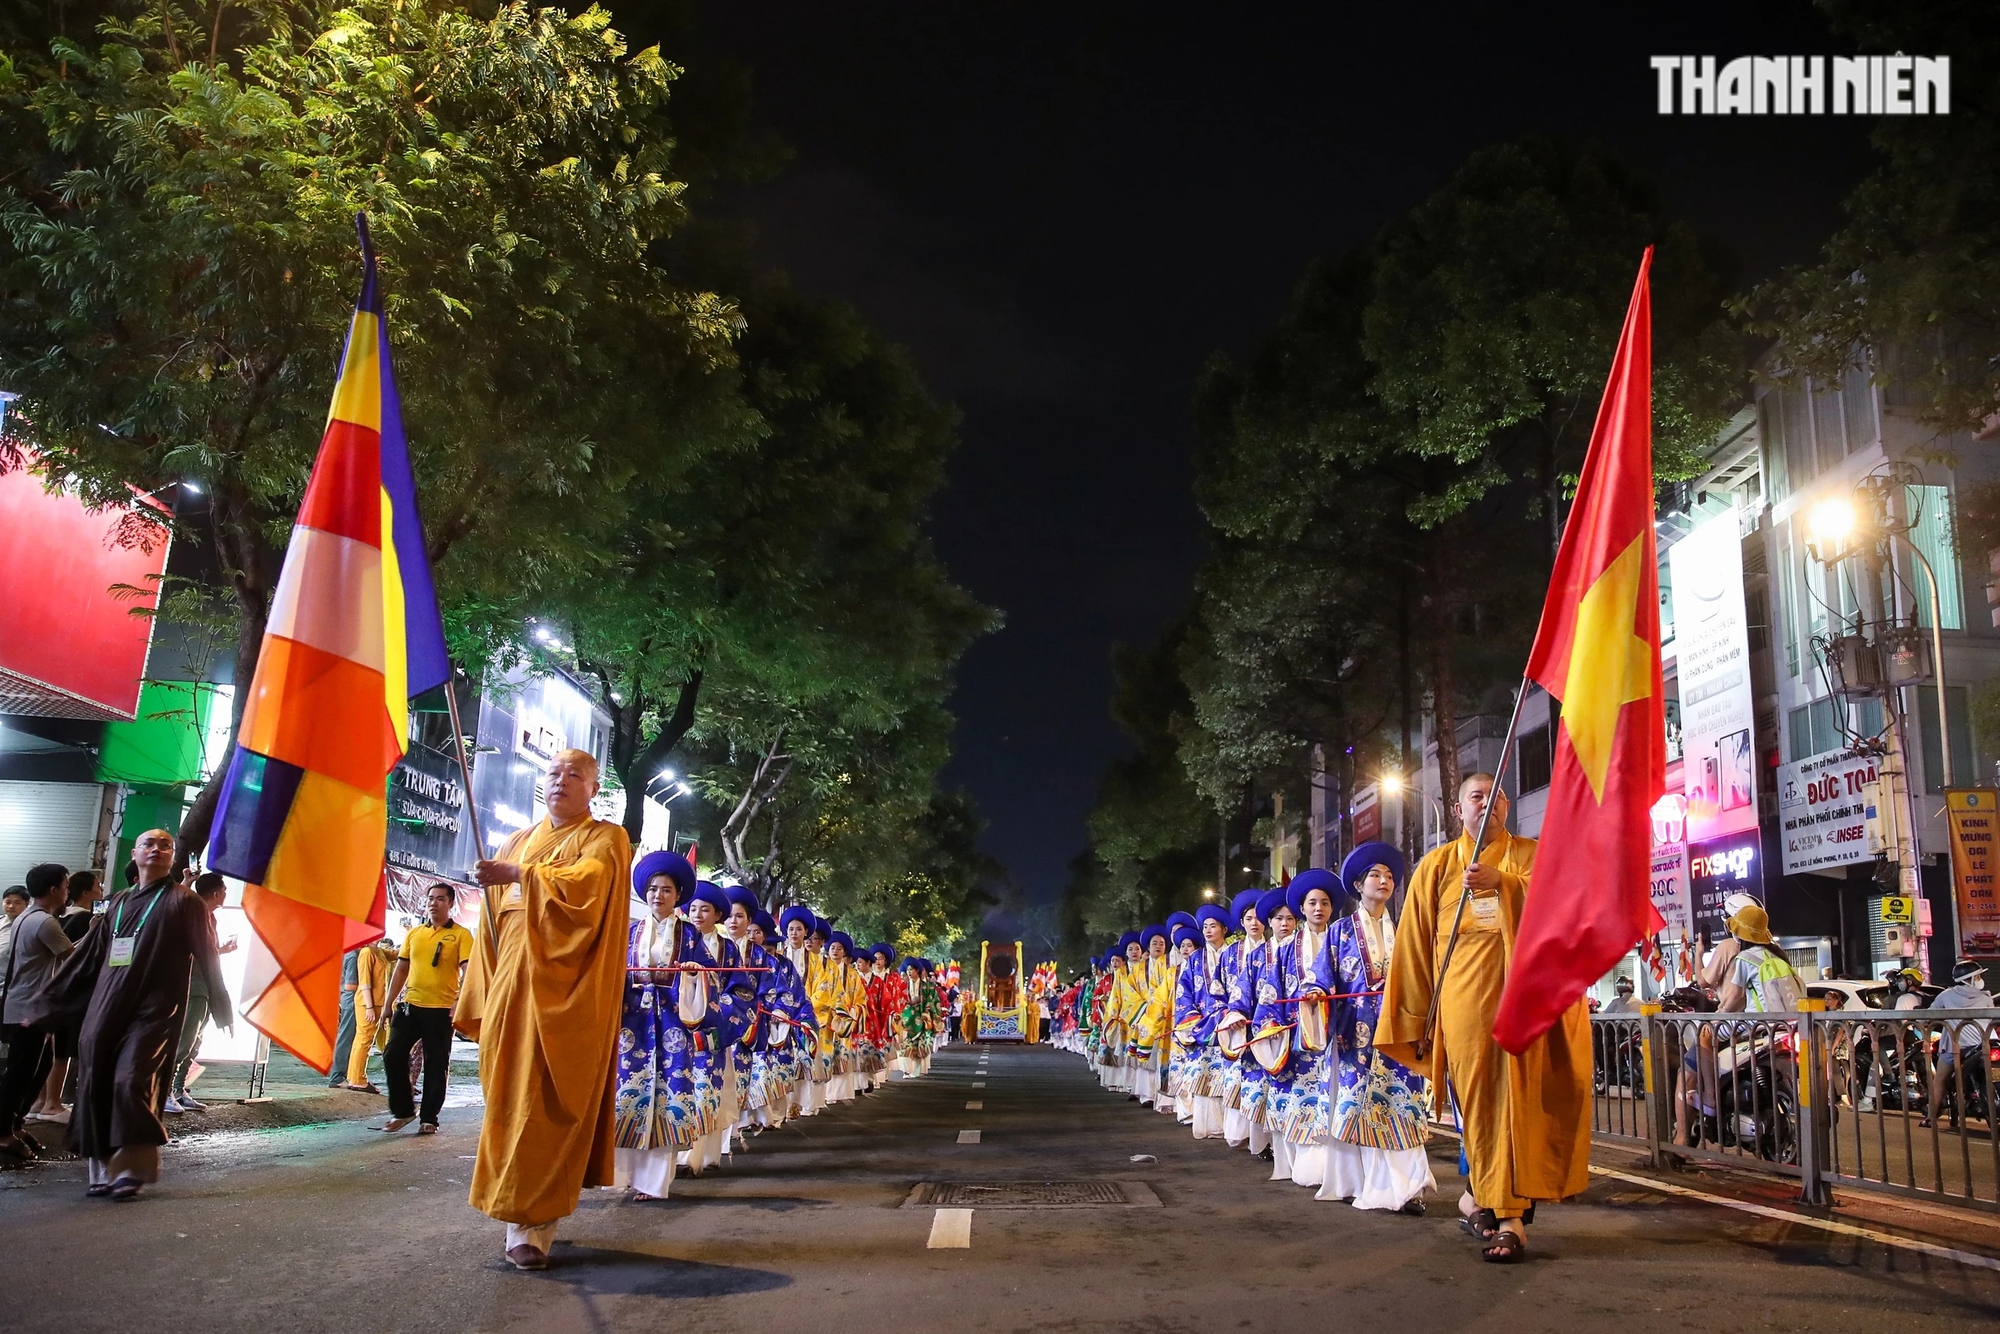 Đoàn rước kiệu nghiêm trang diễu hành trên đường Lê Hồng Phong (Q.10)